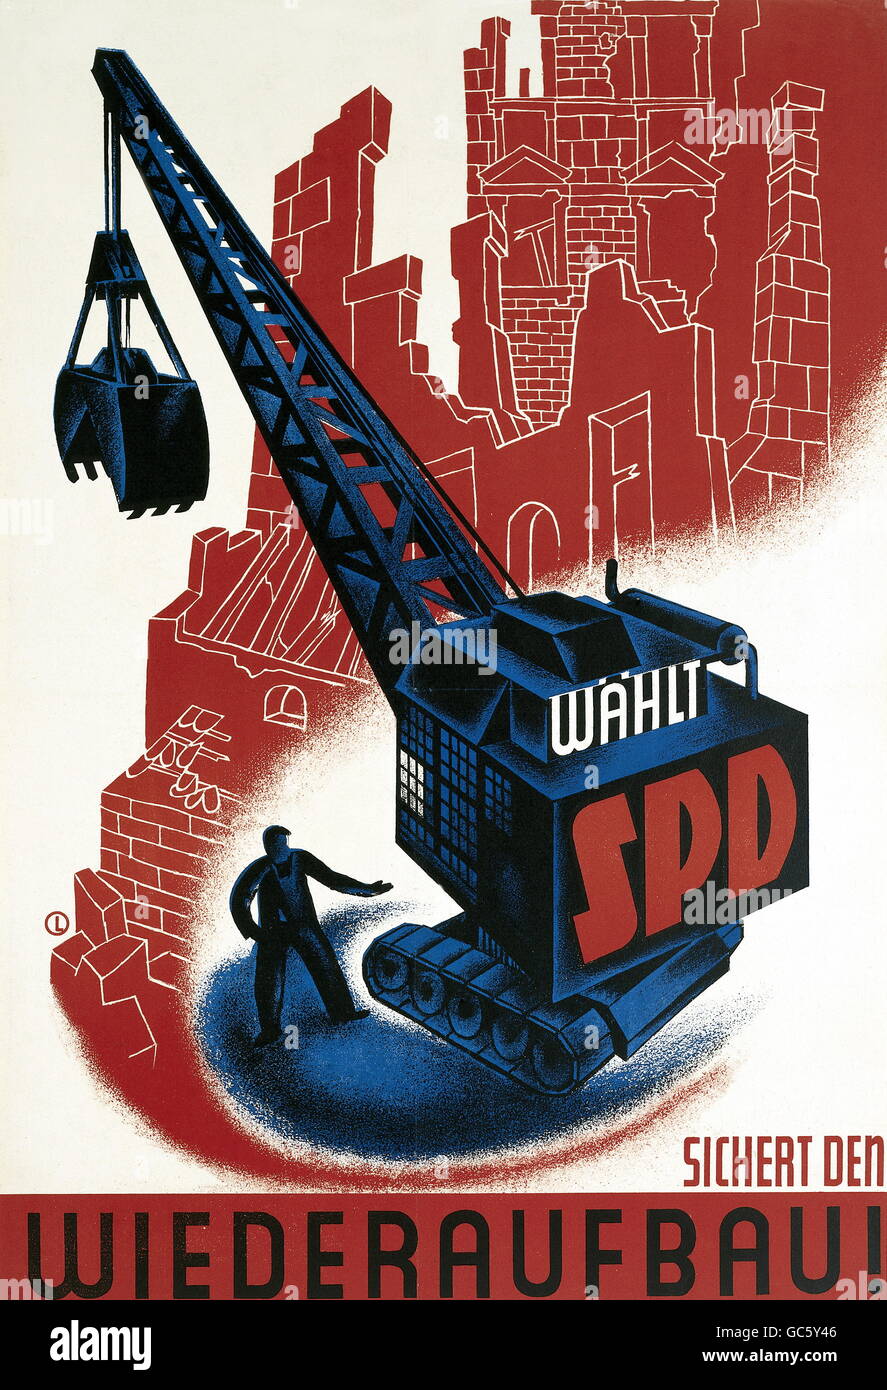 Nachkriegszeit, Deutschland, Politik, 'Secure the reconstruction - vote for the SPD', Wahlplakat, 1940er Jahre, Zusatzrechte-Clearences-nicht vorhanden Stockfoto